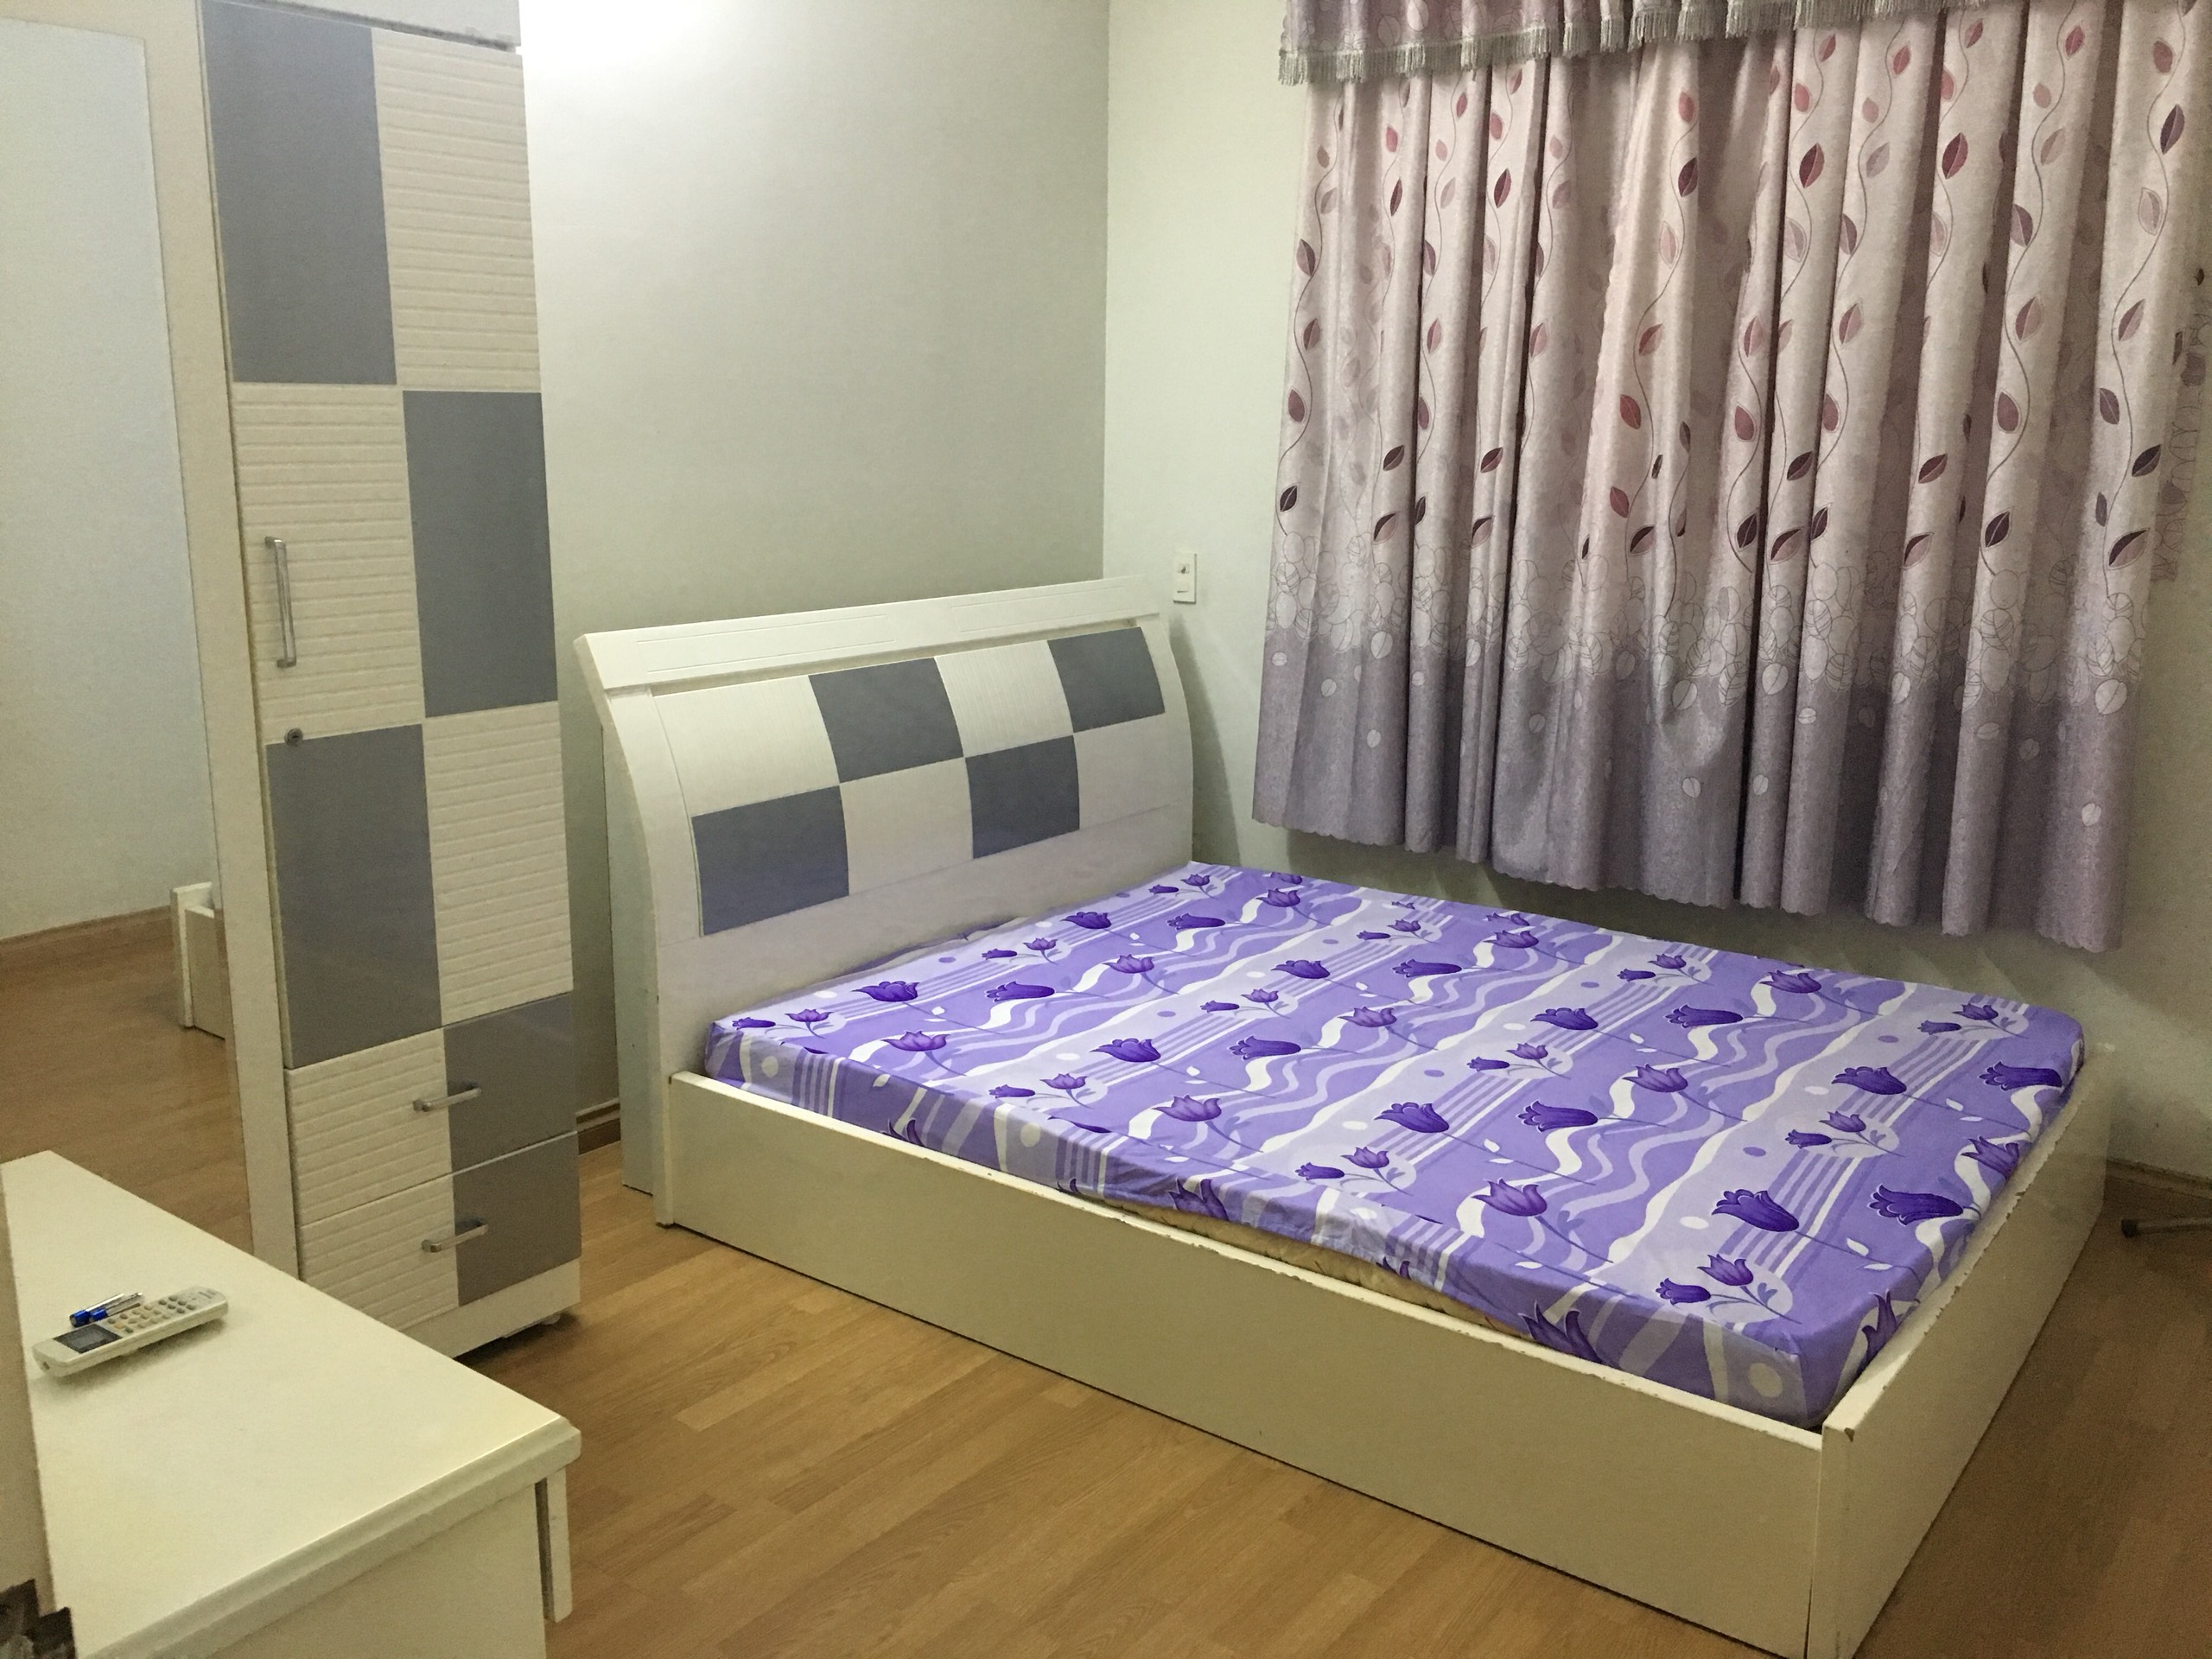 Cần bán căn hộ chung cư Đồng Diều, đường Cao lỗ, P4 Quận 8, lầu 1, DT 75m2, 2 phòng ngủ 1